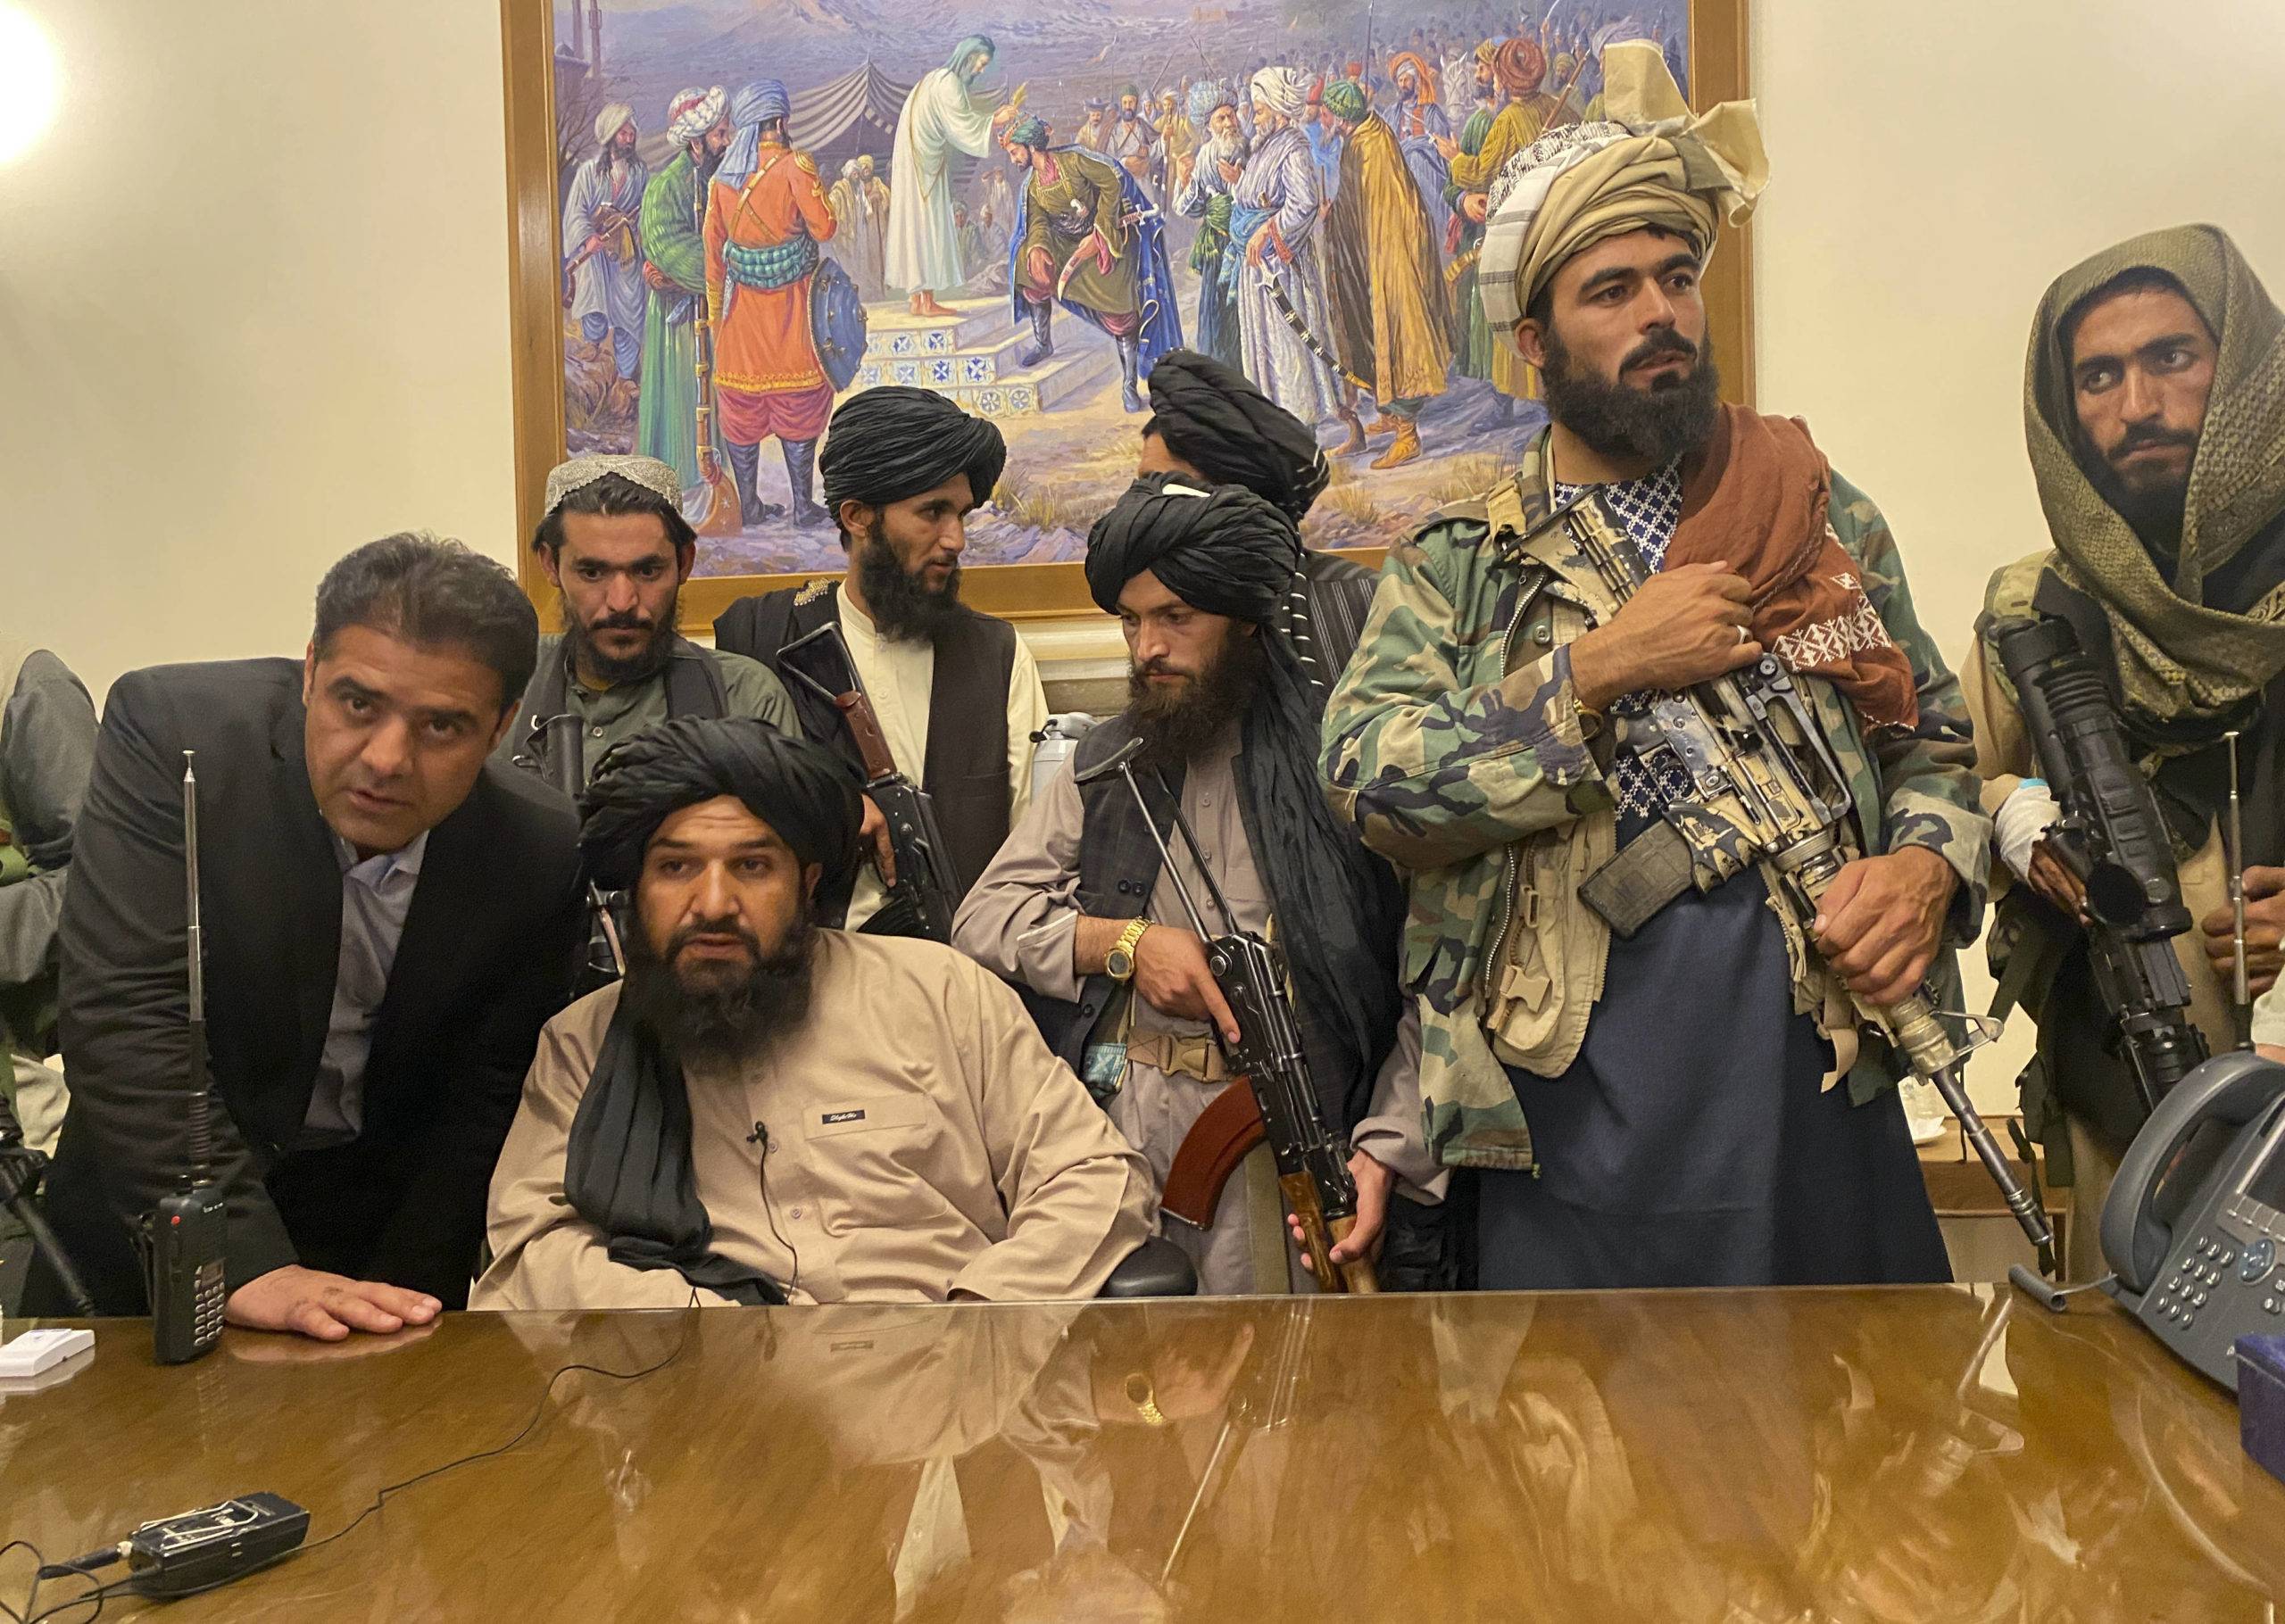 Des combattants talibans prennent le contrôle du palais présidentiel afghan après que le président Ashraf Ghani a fui le pays, à Kaboul, le dimanche 15 août 2021. (AP Photo/Zabi Karimi)/XRG156/21227743068873//2108152243